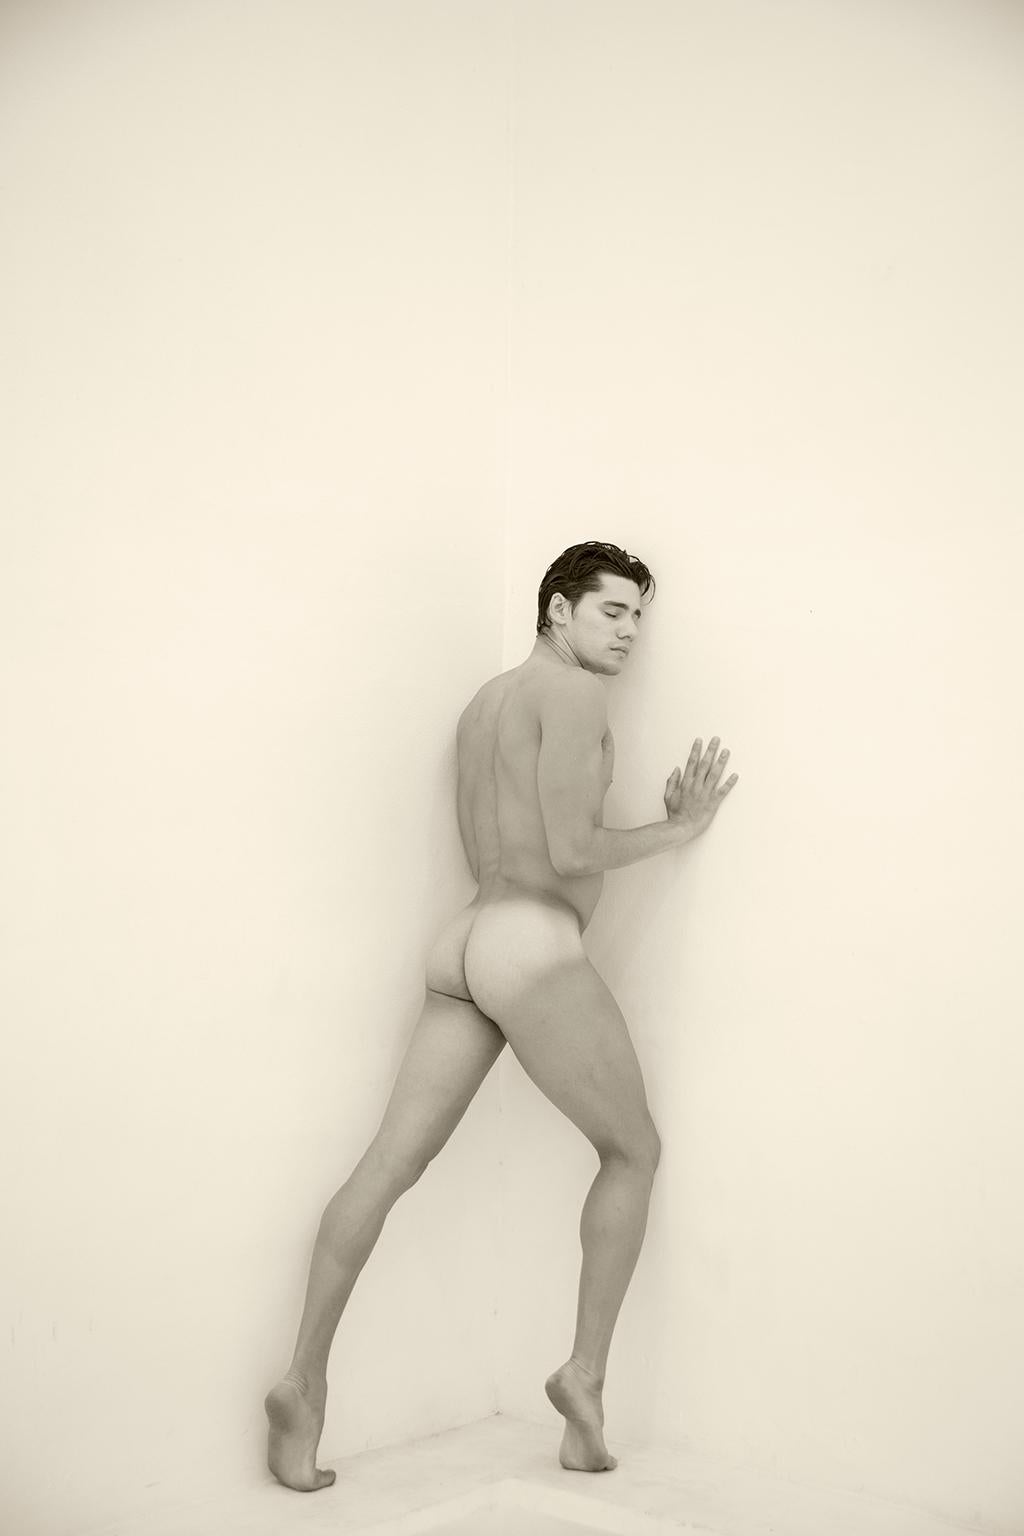 Ricky Cohete Nude Photograph – Ein Mann an der Wand, ein. Motion Series. männlicher Aktfotografie Sepia